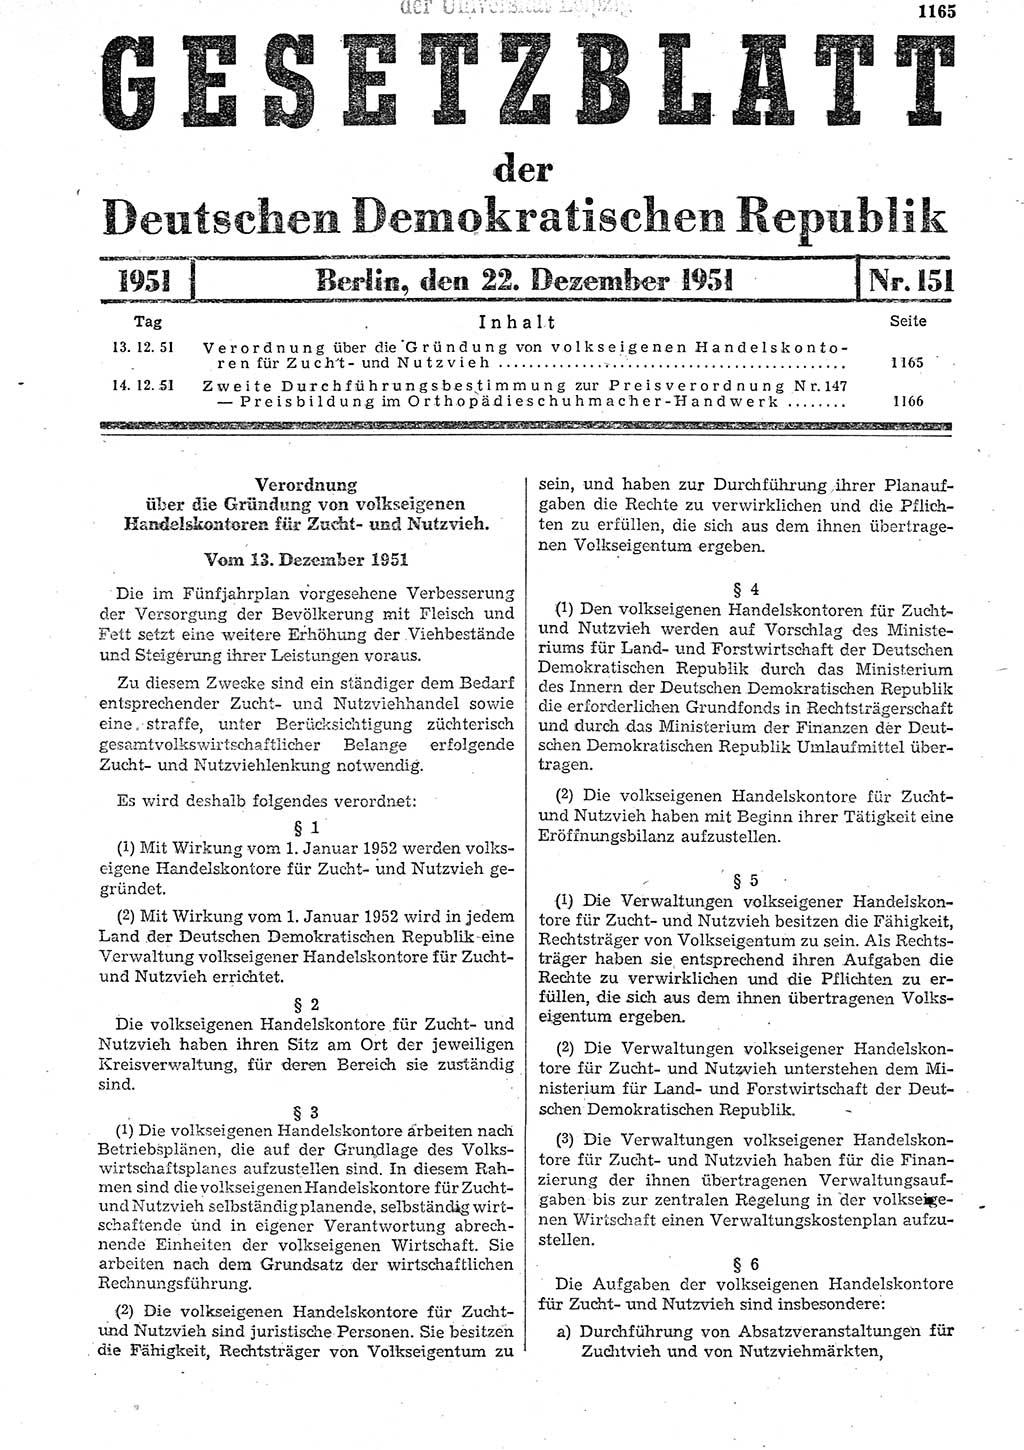 Gesetzblatt (GBl.) der Deutschen Demokratischen Republik (DDR) 1951, Seite 1161 (GBl. DDR 1951, S. 1161)